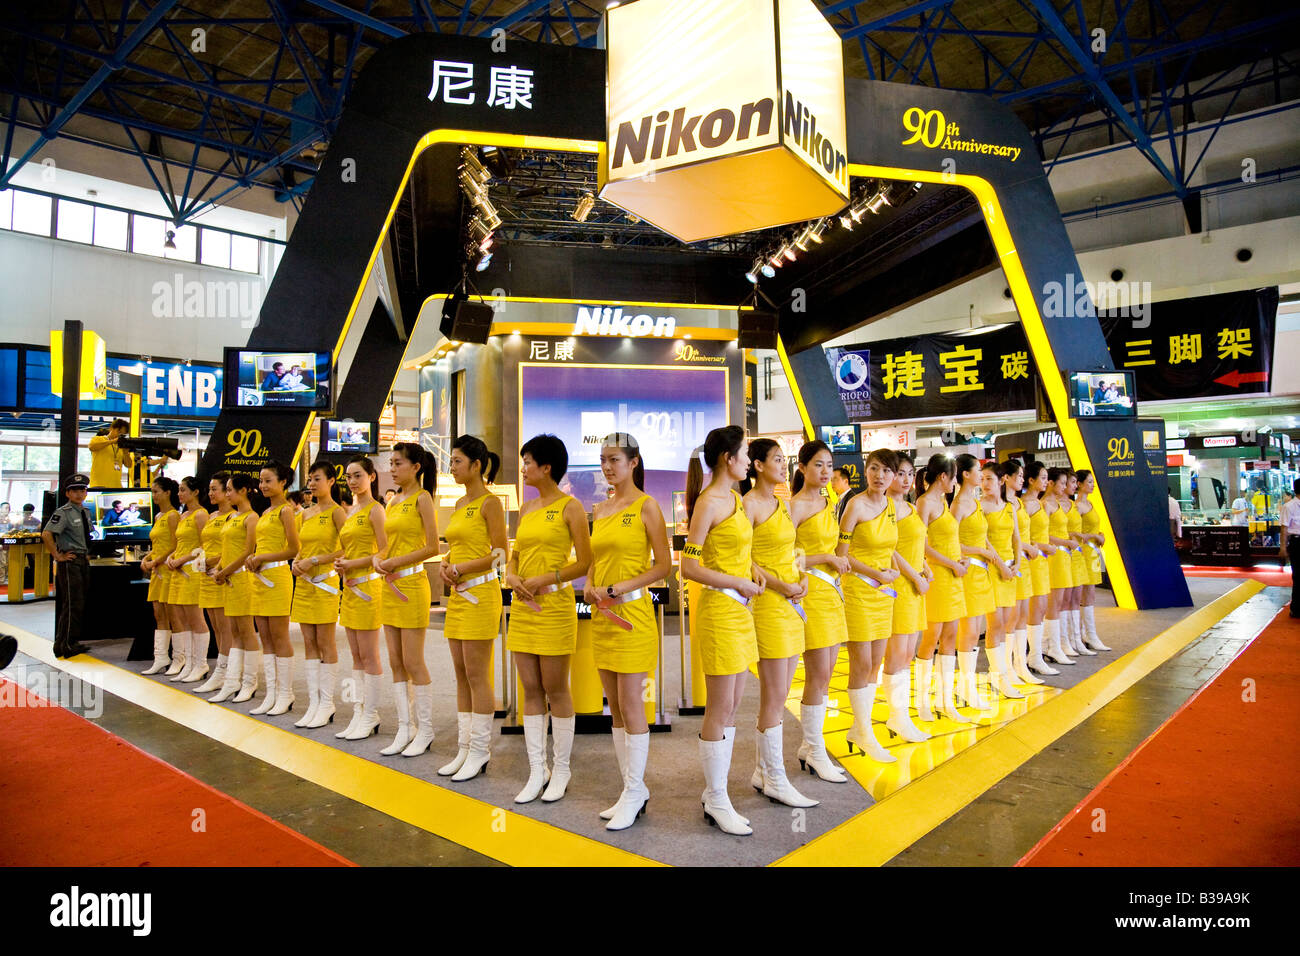 Gruppe von chinesischen Mädchen gekleidet in Nikon gelb uniform auf fotografische Messe Stand in Peking China Juli 2007 JMH3208 Stockfoto